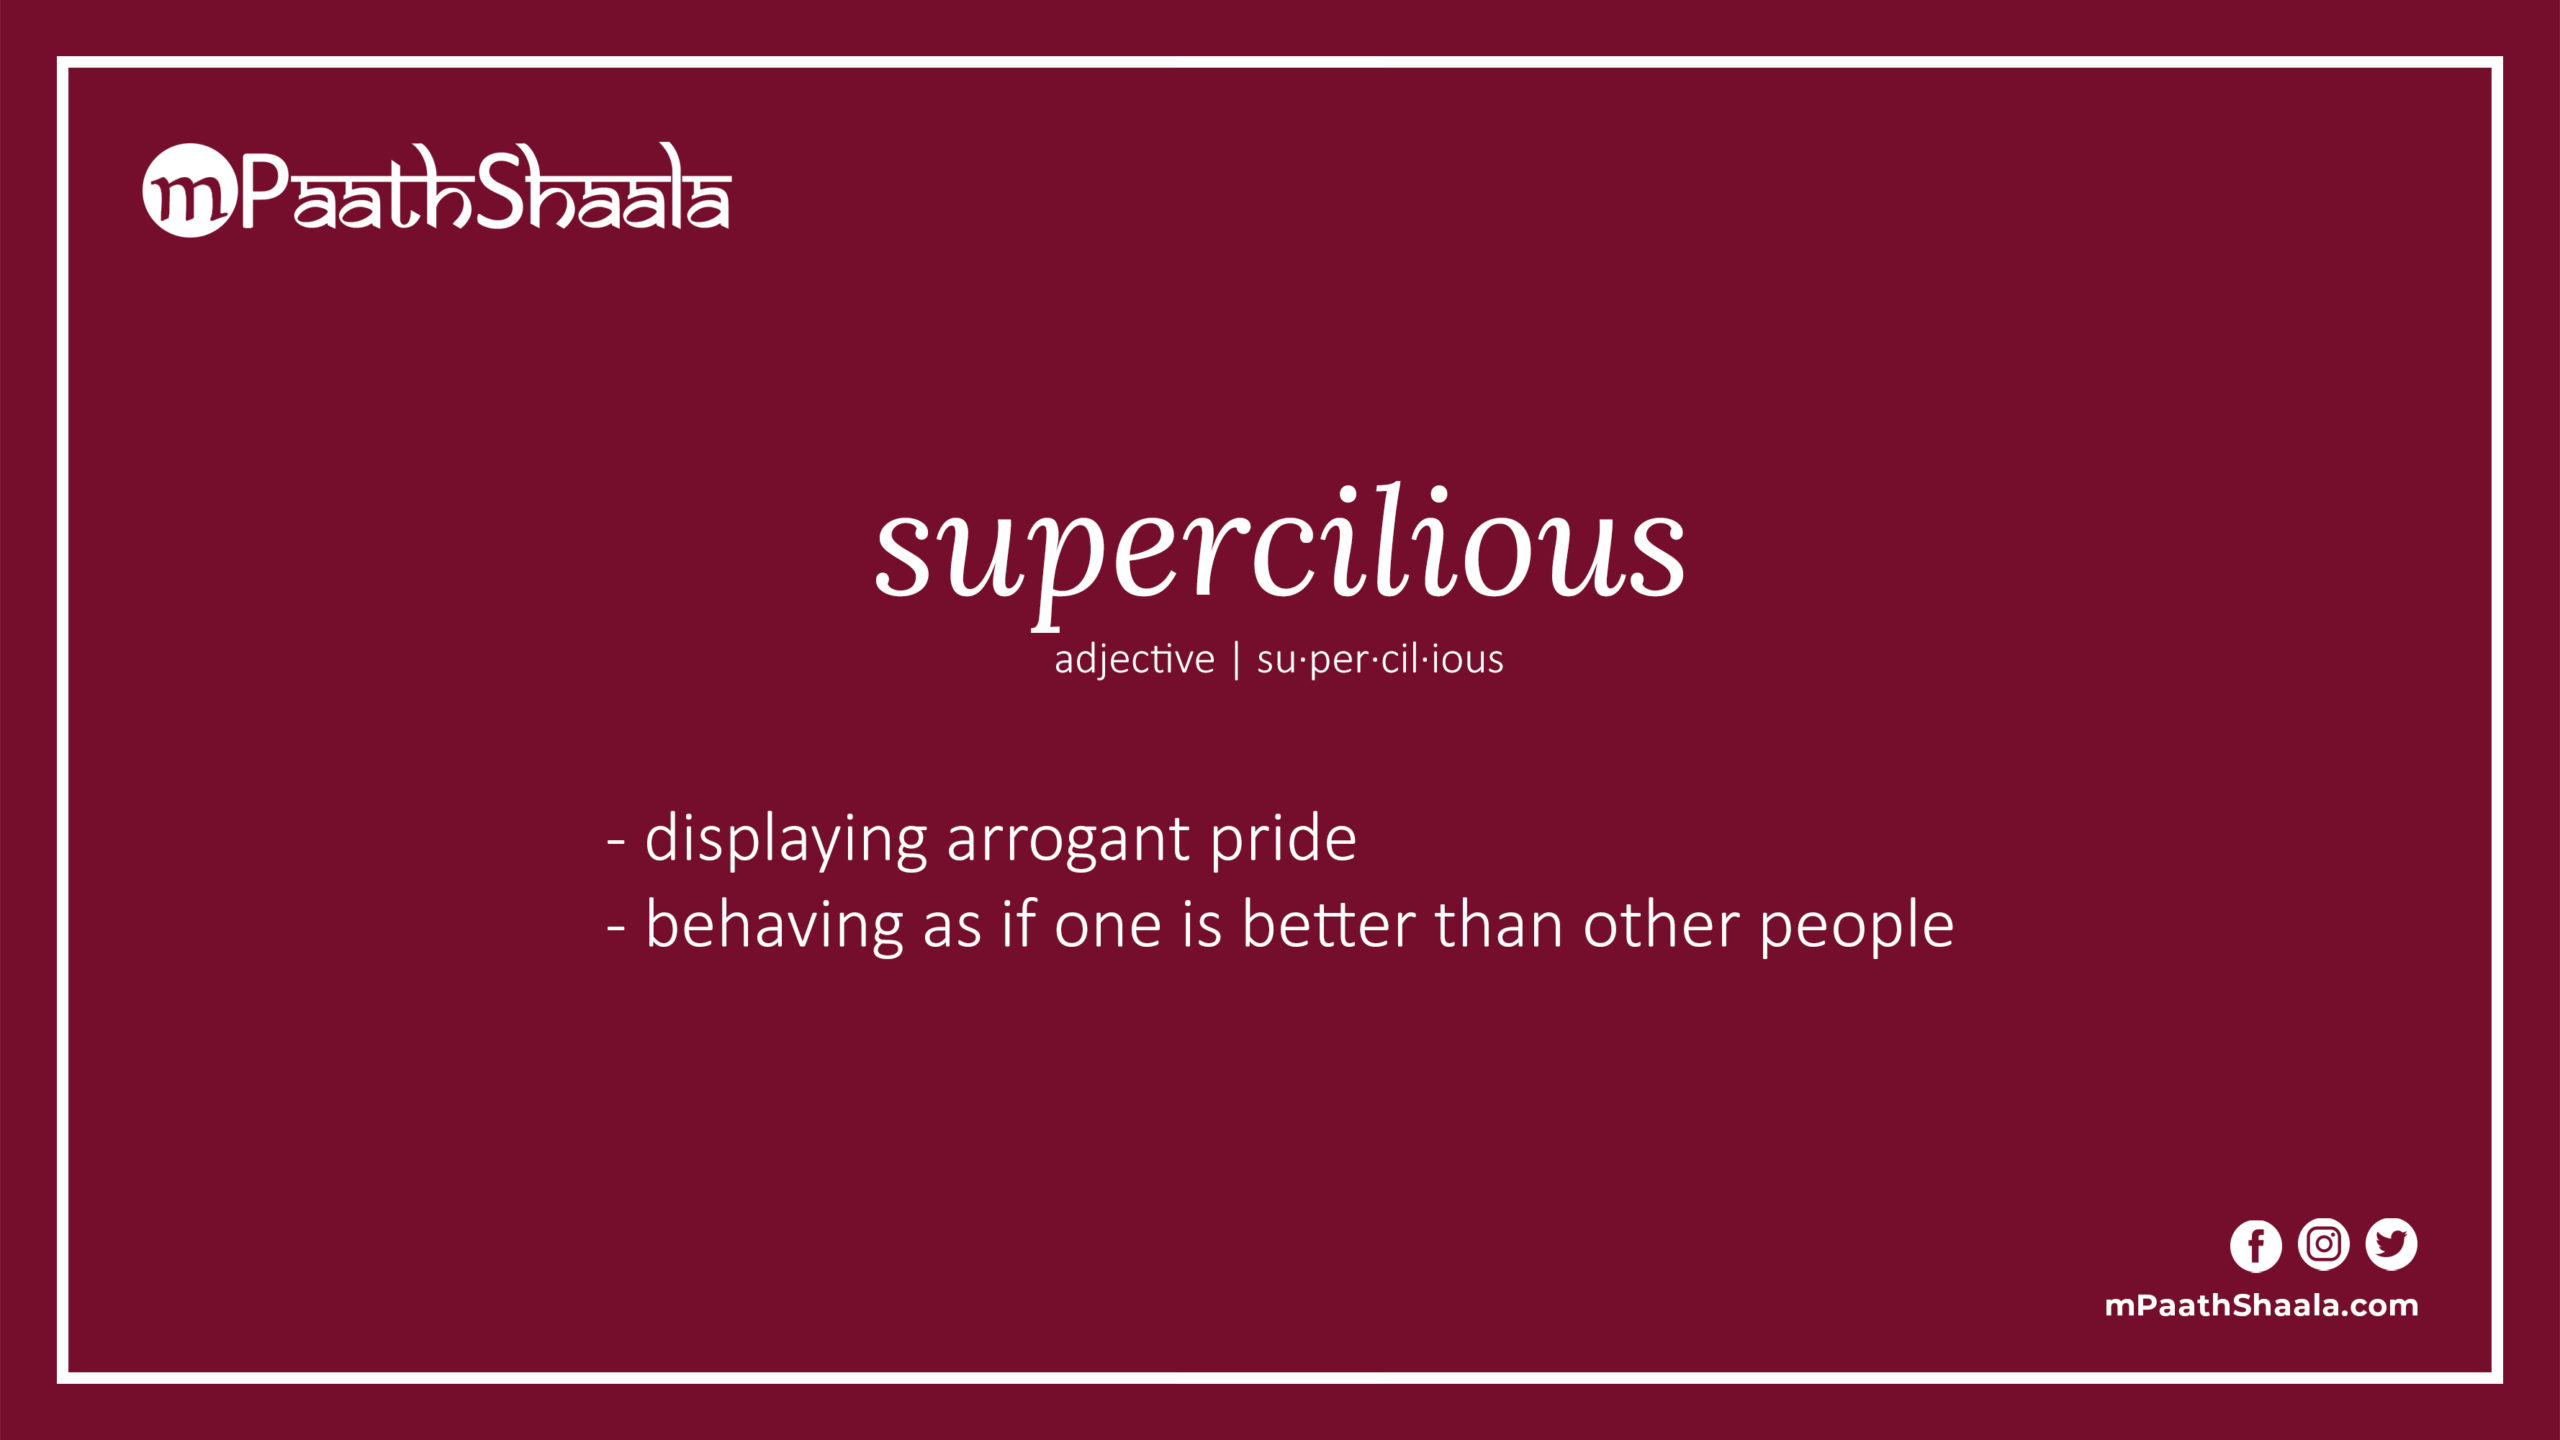 supercilious